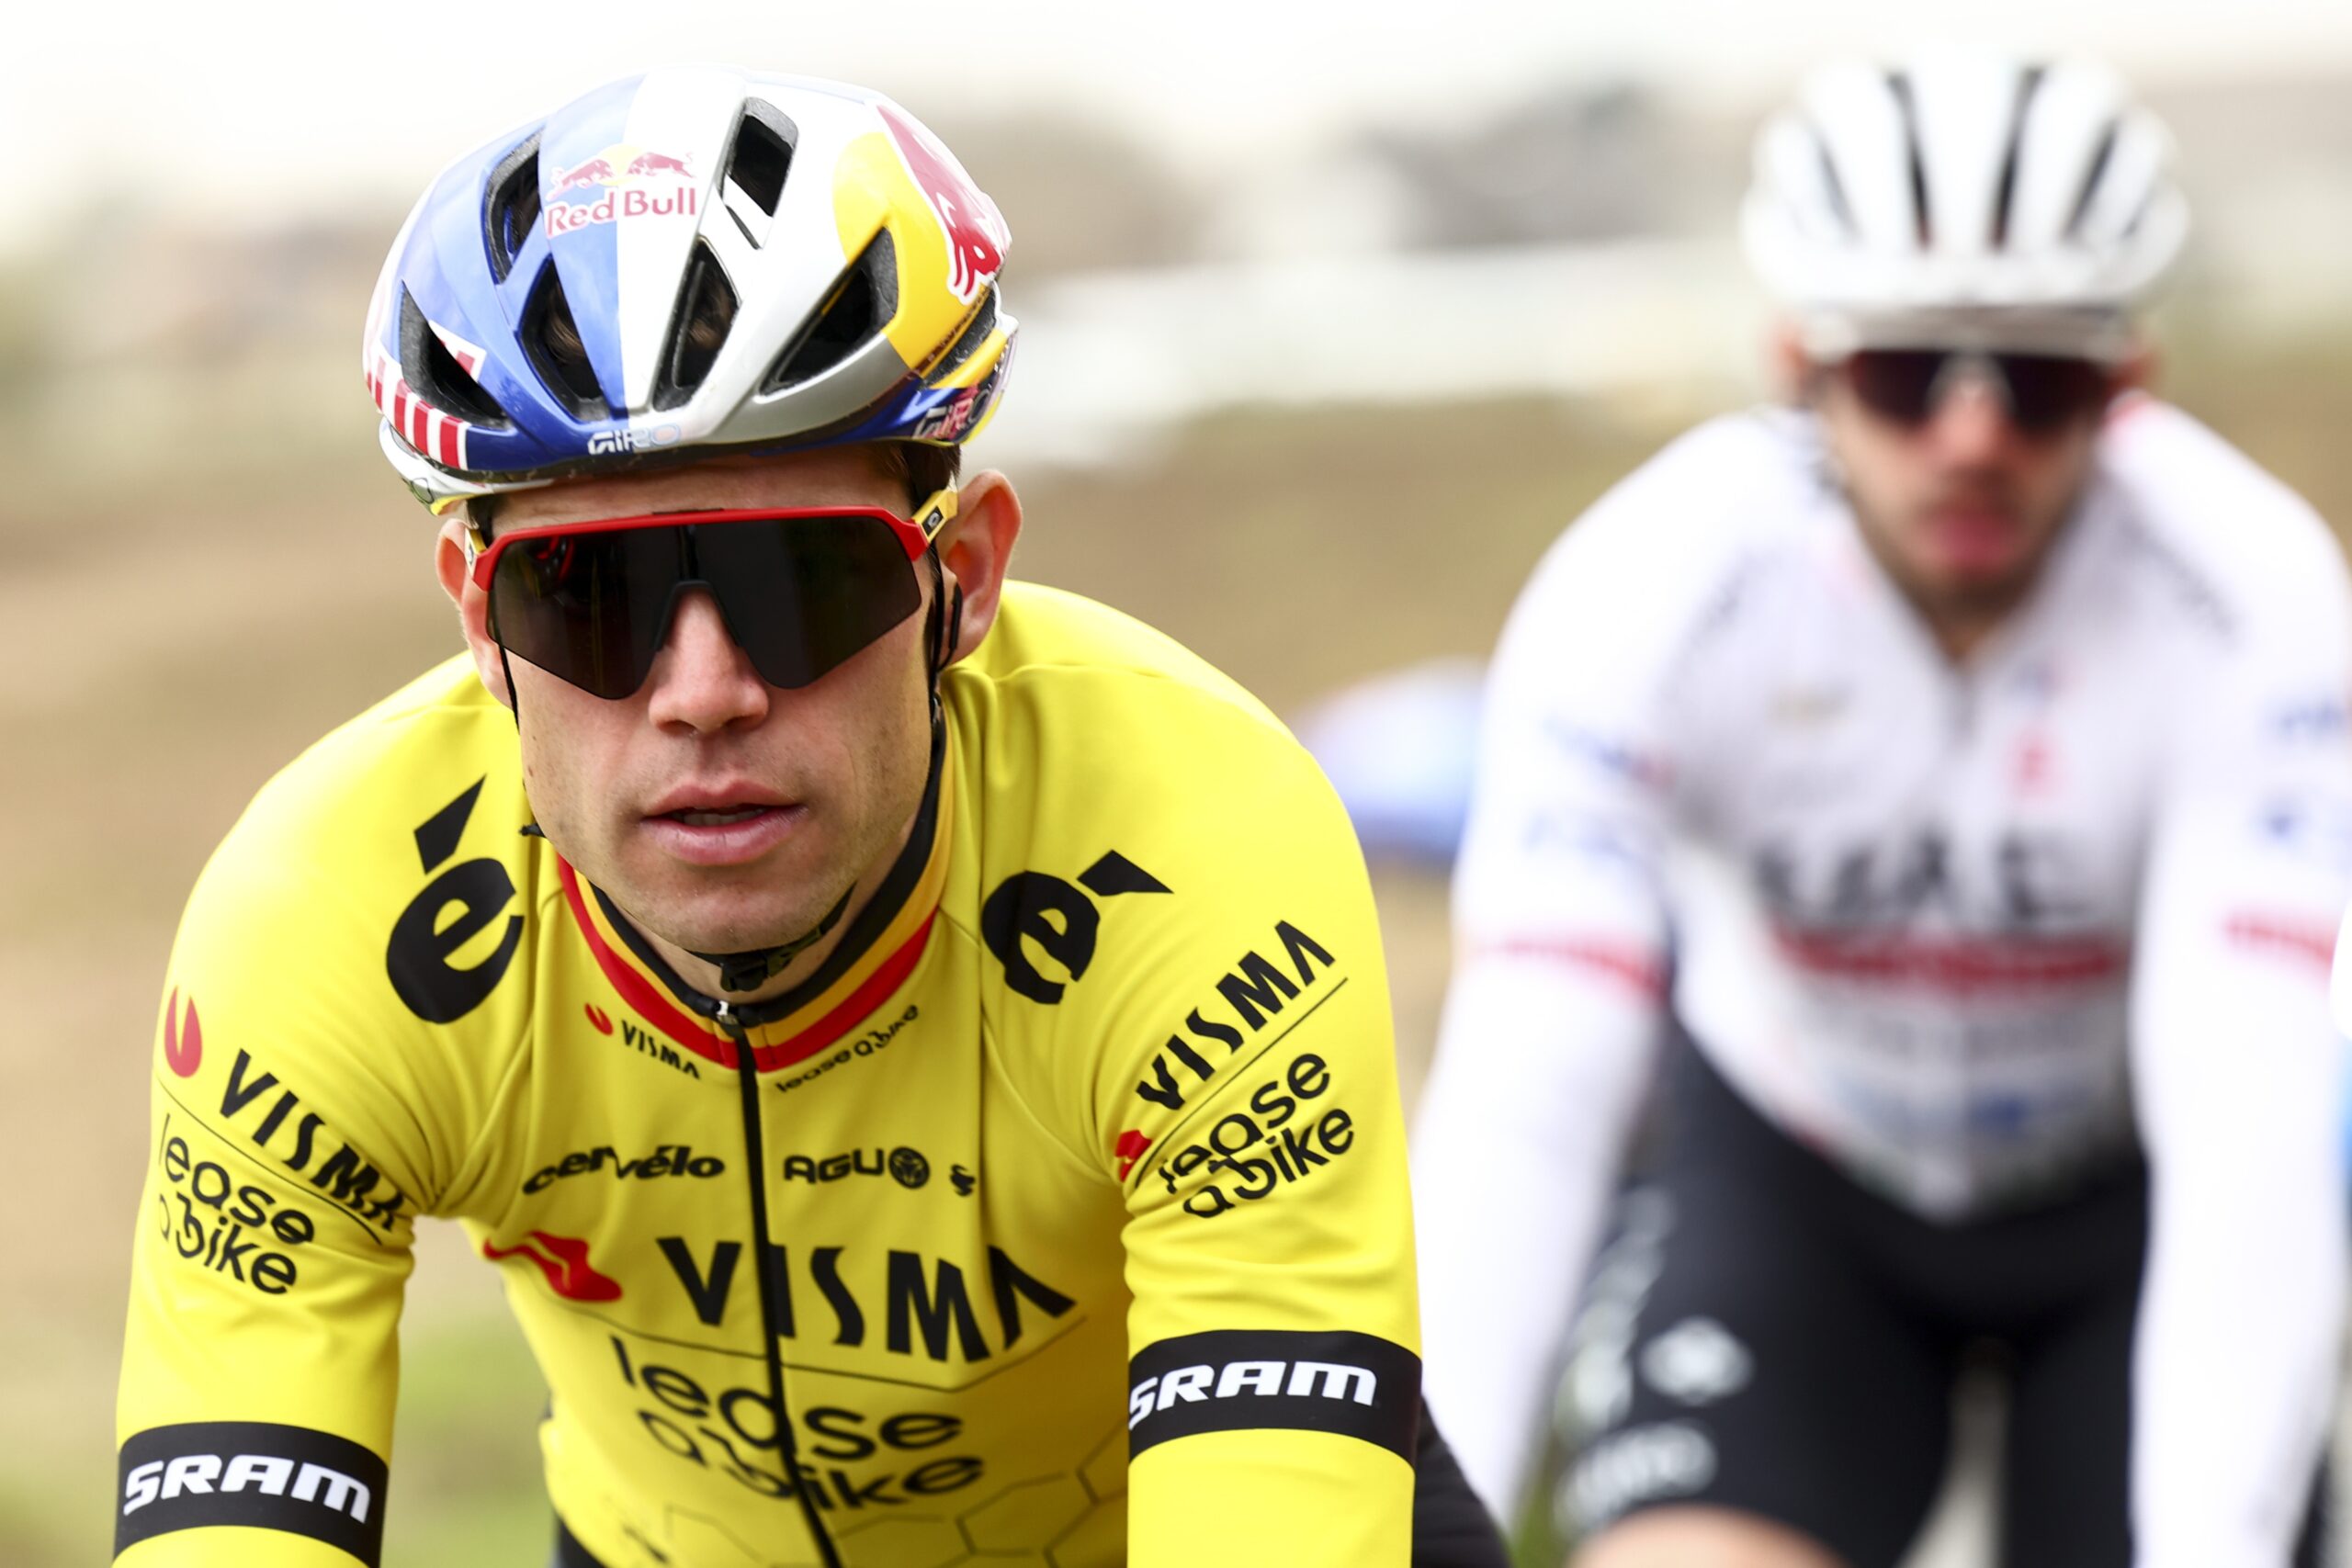 Ciclismo: le condizioni di Wout van Aert peggiorano. Giro d’Italia a forte rischio